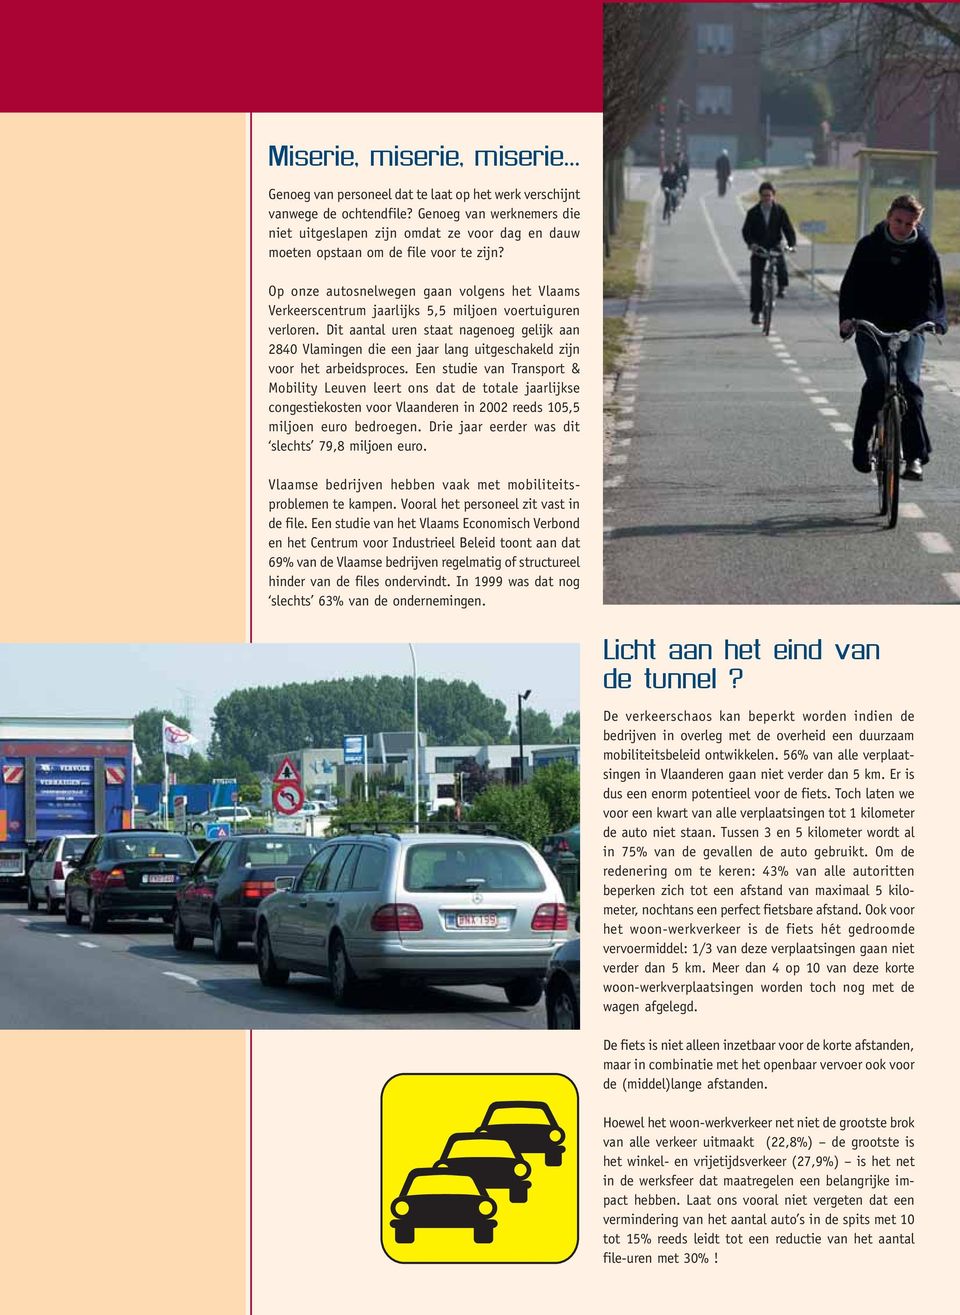 Op onze autosnelwegen gaan volgens het Vlaams Verkeerscentrum jaarlijks 5,5 miljoen voertuiguren verloren.